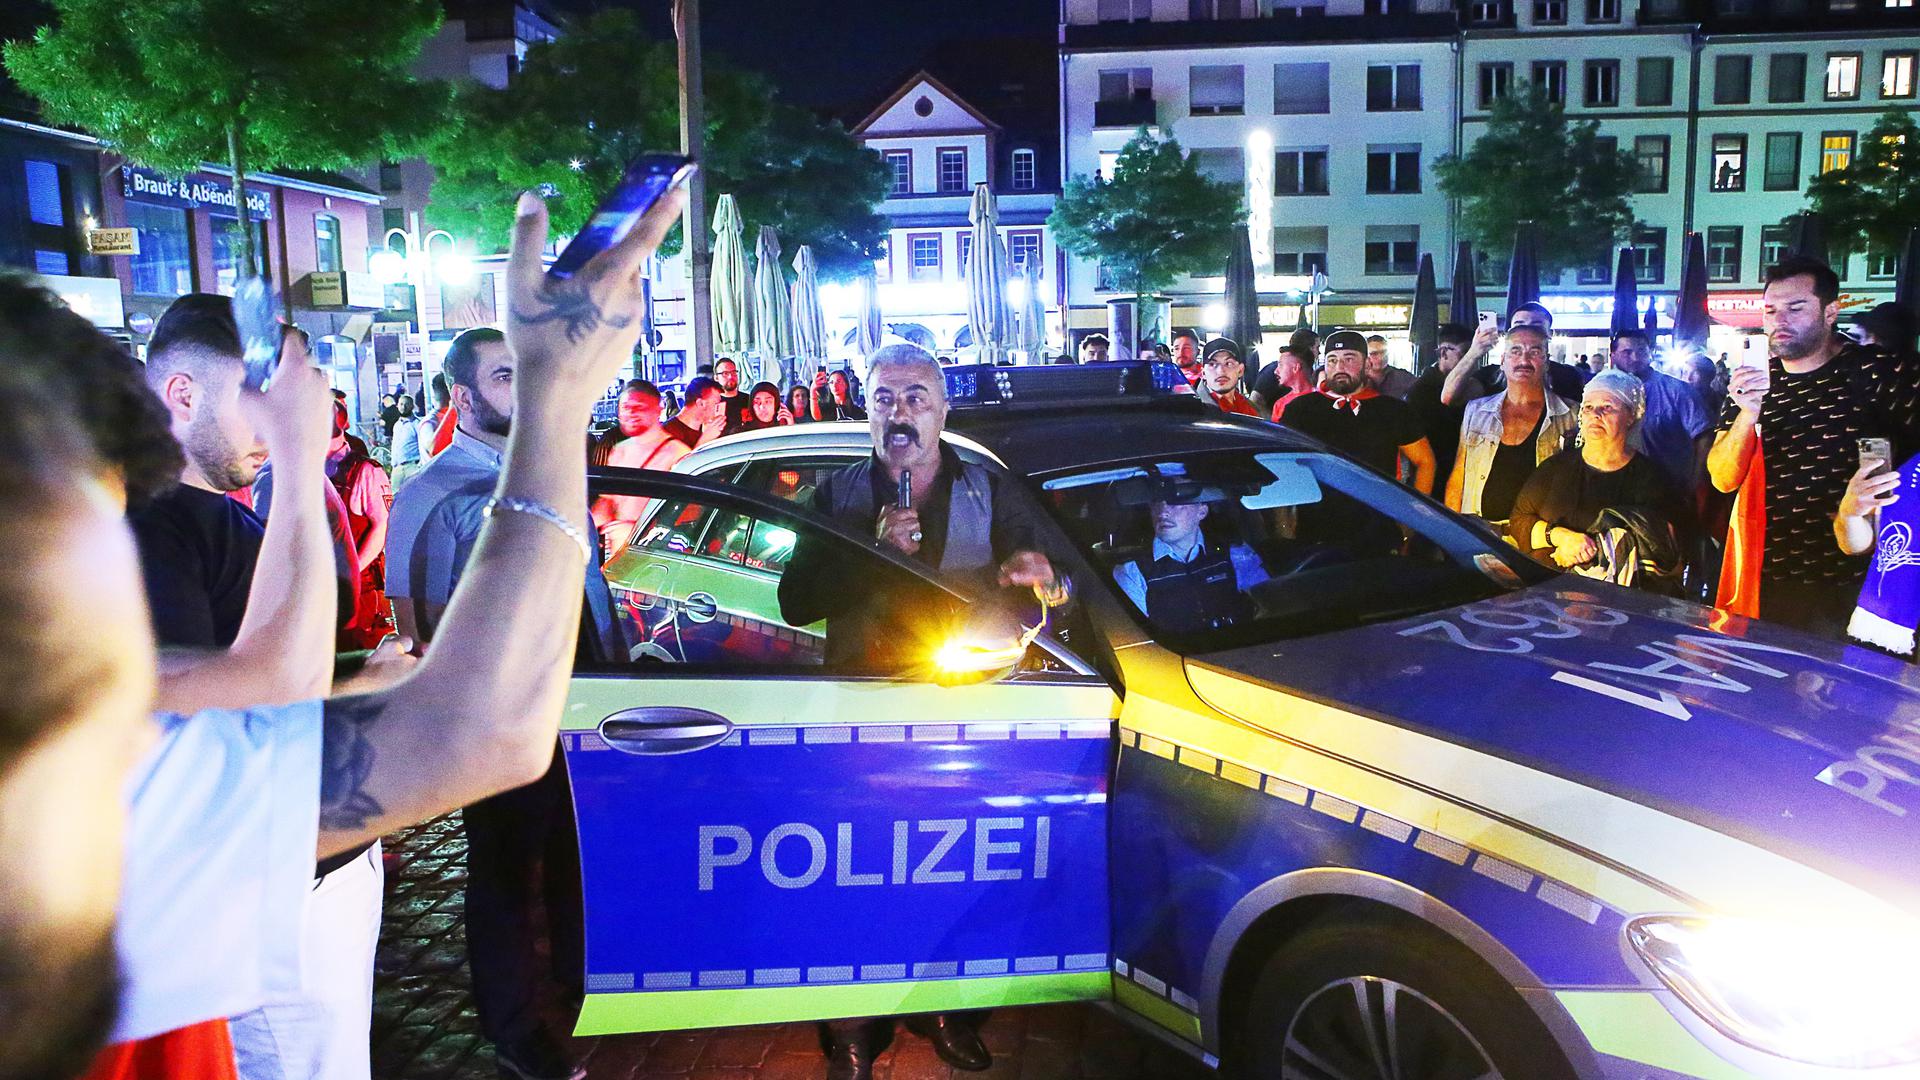 Die Polizei ist in der Innenstadt im Einsatz, während Menschen um ein Polizeiauto stehen. Nach Bekanntgabe des Sieges von Recep Tayyip Erdoğan bei der Präsidentenwahl in der Türkei ist es am Sonntagabend in Mannheim zu Auseinandersetzungen gekommen.